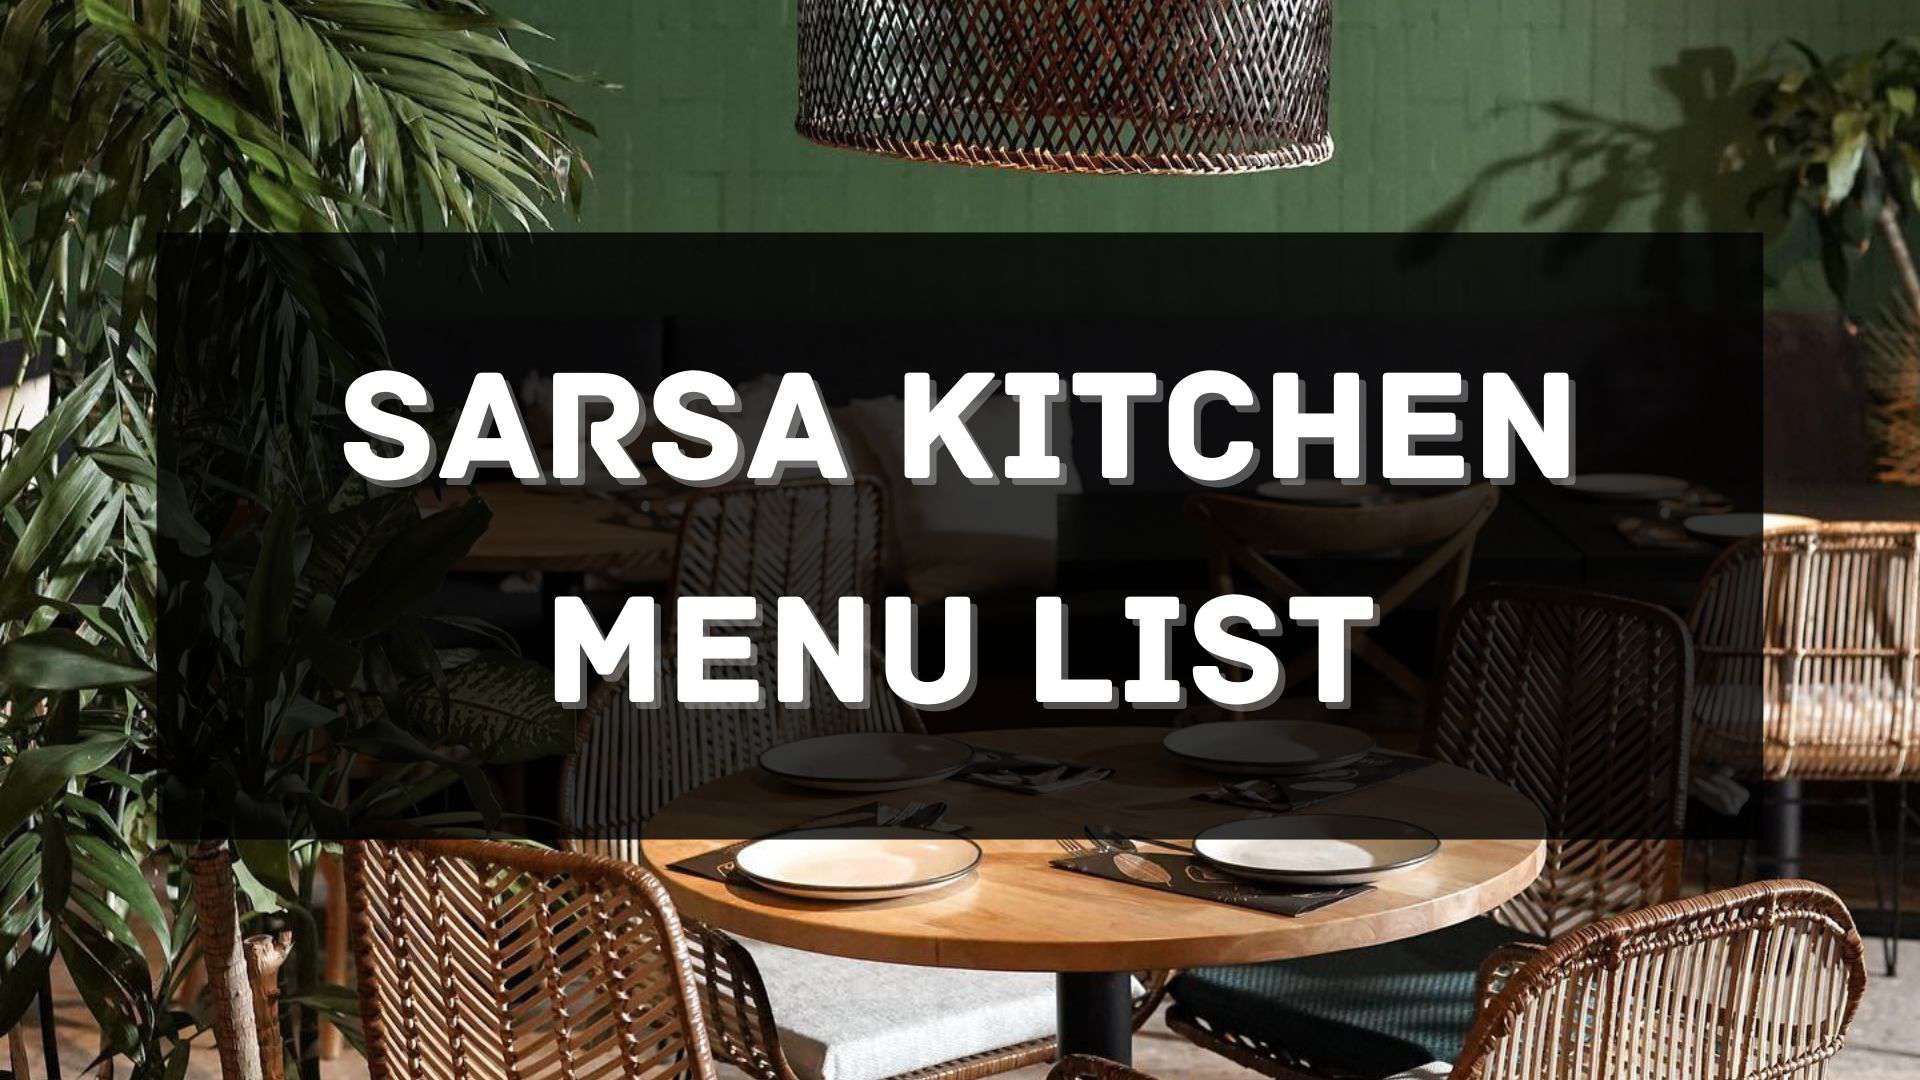 sarsa kitchen menu prices philippines